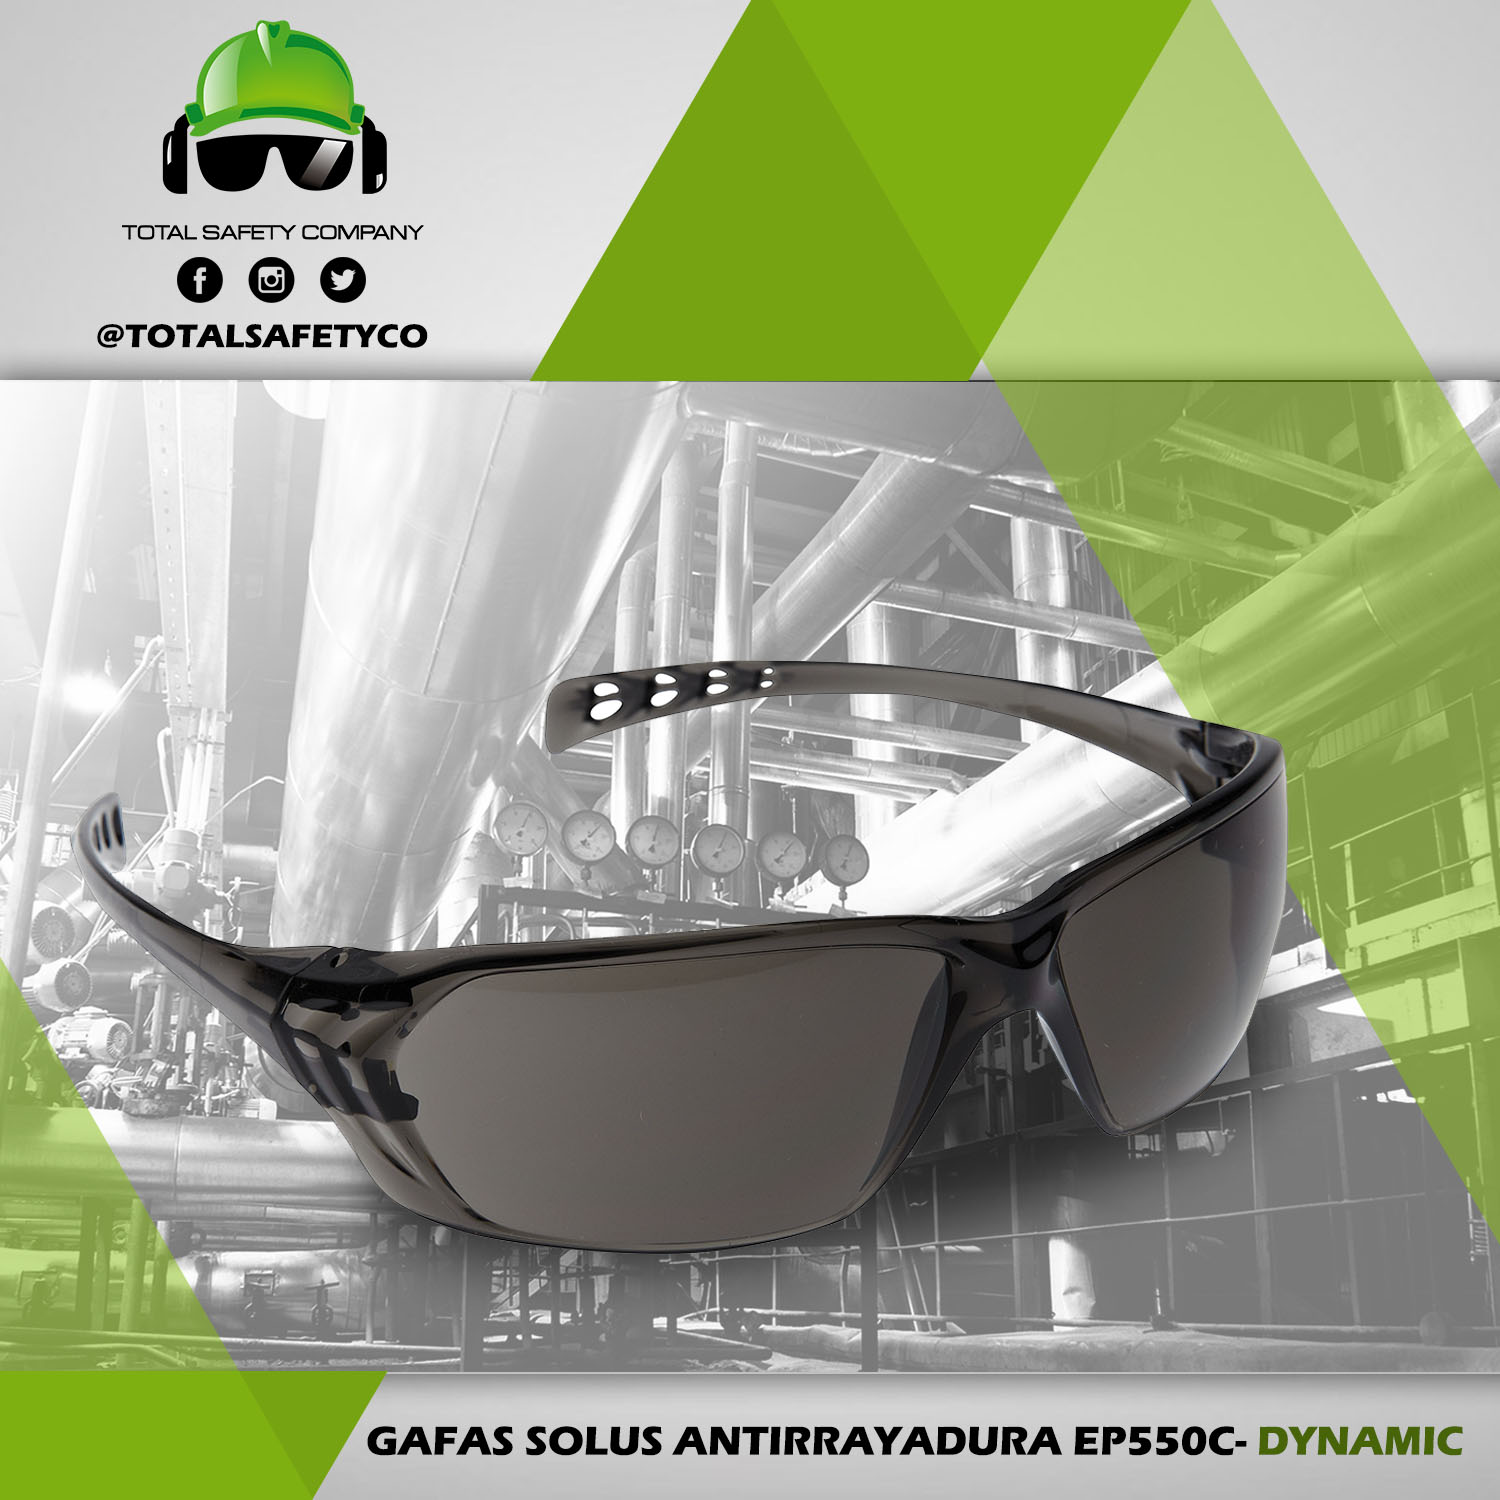 Gafas Solus antirrayadura EP550C- DYNAMIC